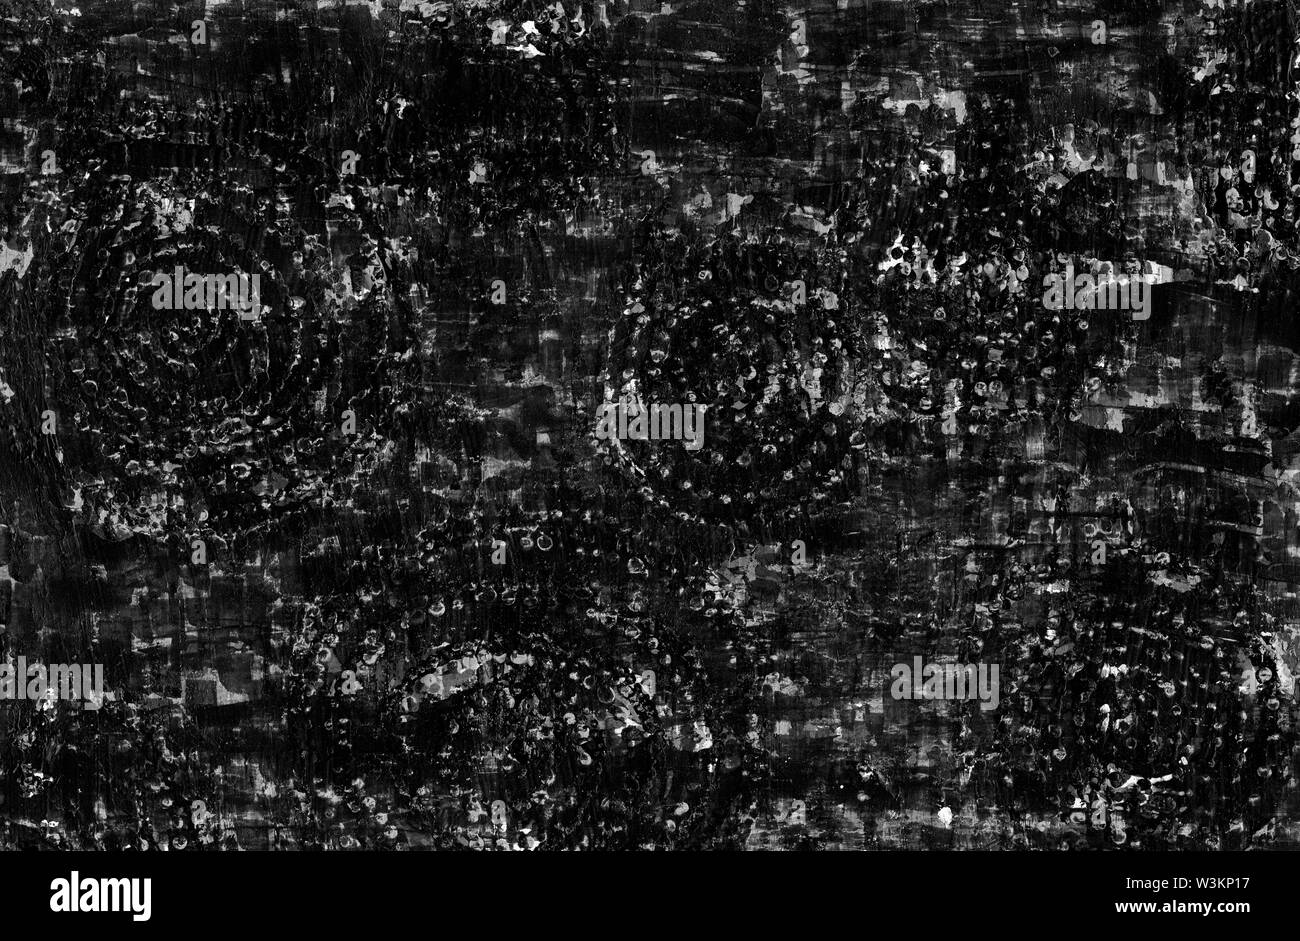 Contrasto astratta grafica grunge background. In bianco e nero la trama grossolana con graffi, punti, linee, cerchi concentrici, tratti e macchie. Il te Foto Stock